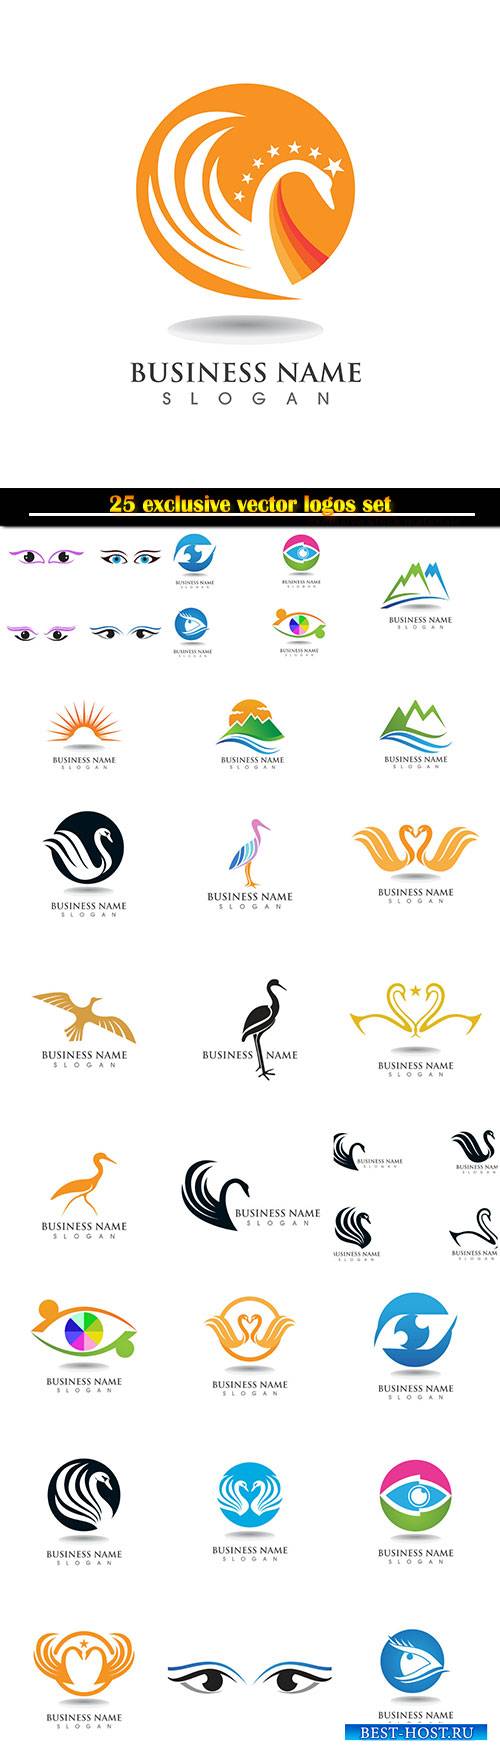 Logo and symbols vector design set